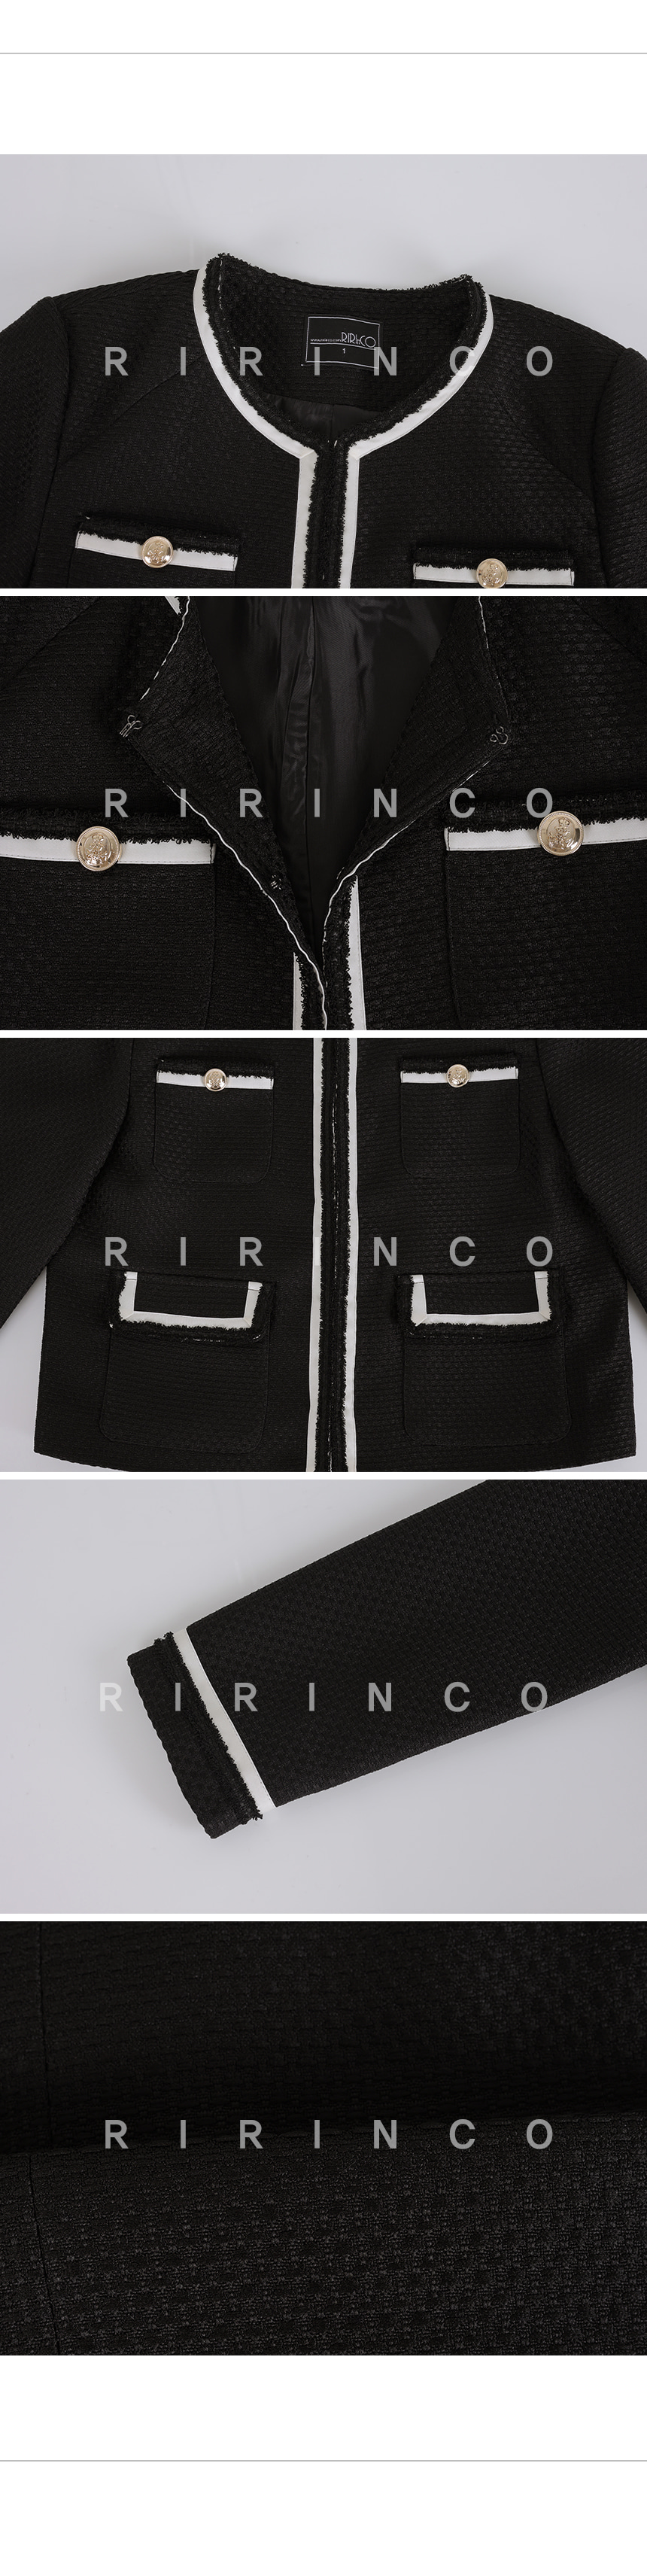 RIRINCO 配色ホックセミクロップド丈ツイードジャケット